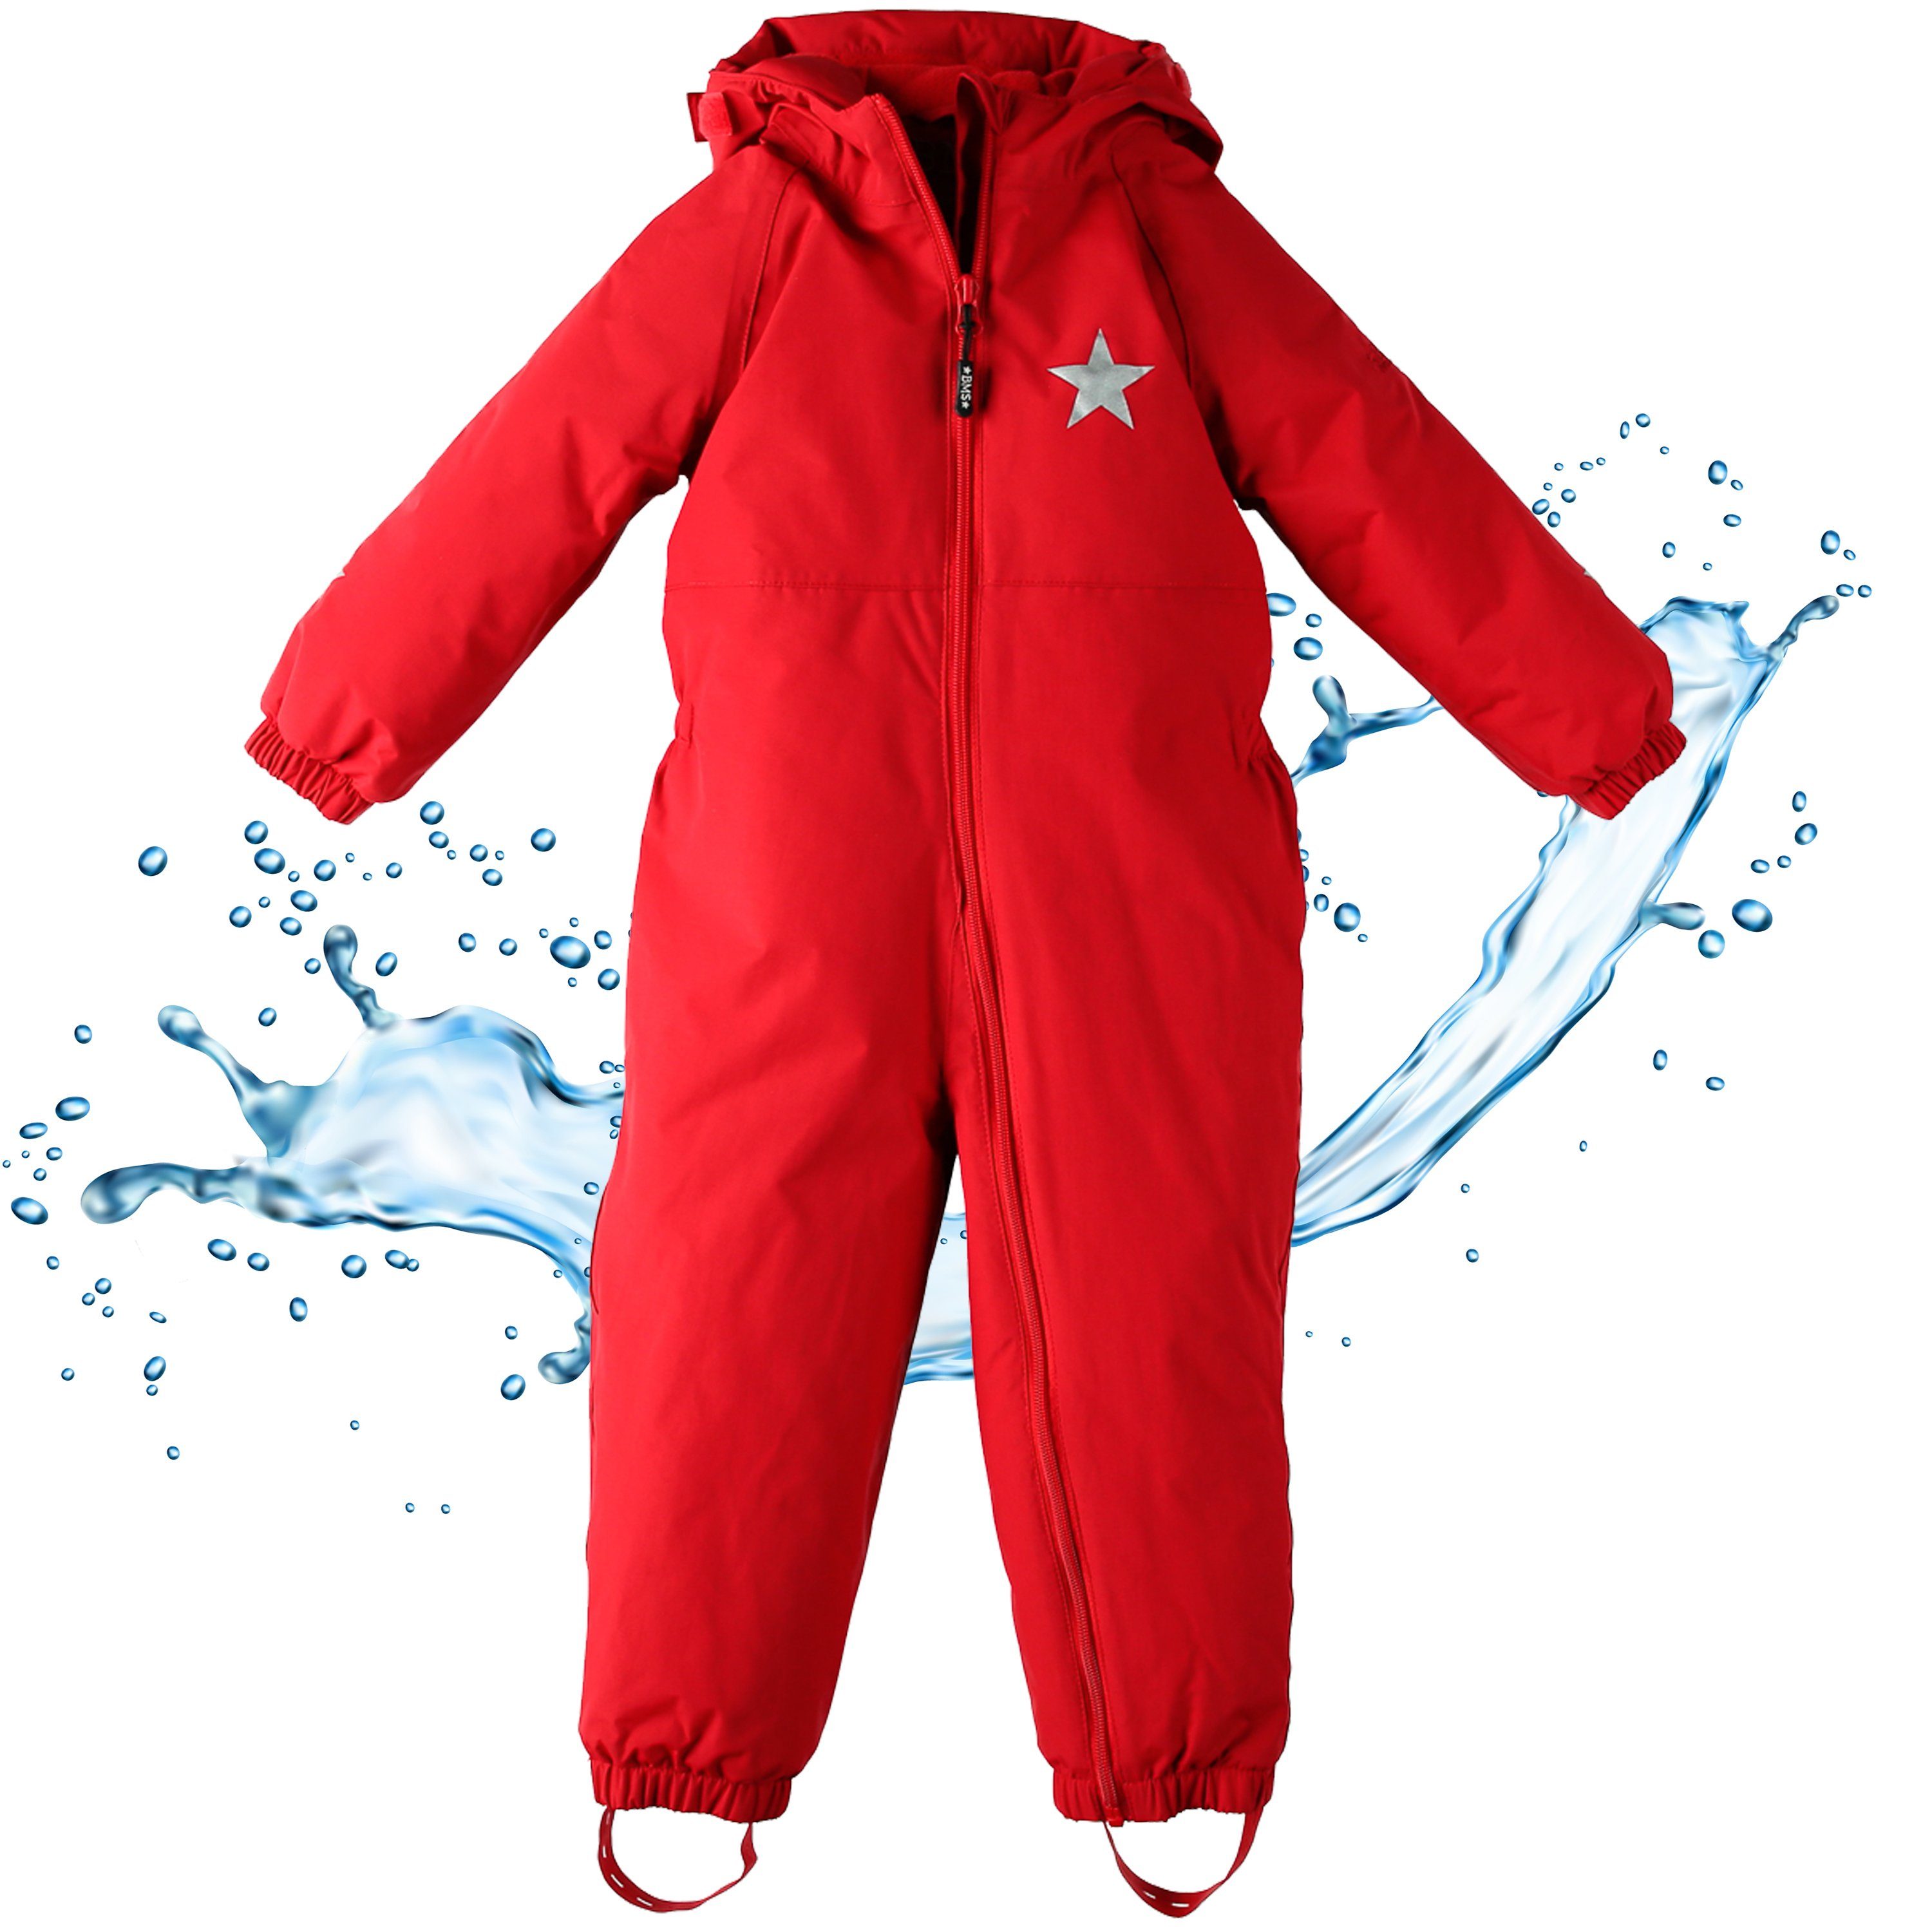 BMS Regenoverall Regenanzug für Kinder 100% wasserdicht & atmungsaktiv - PFC frei im praktischen Design rot | Regenanzüge